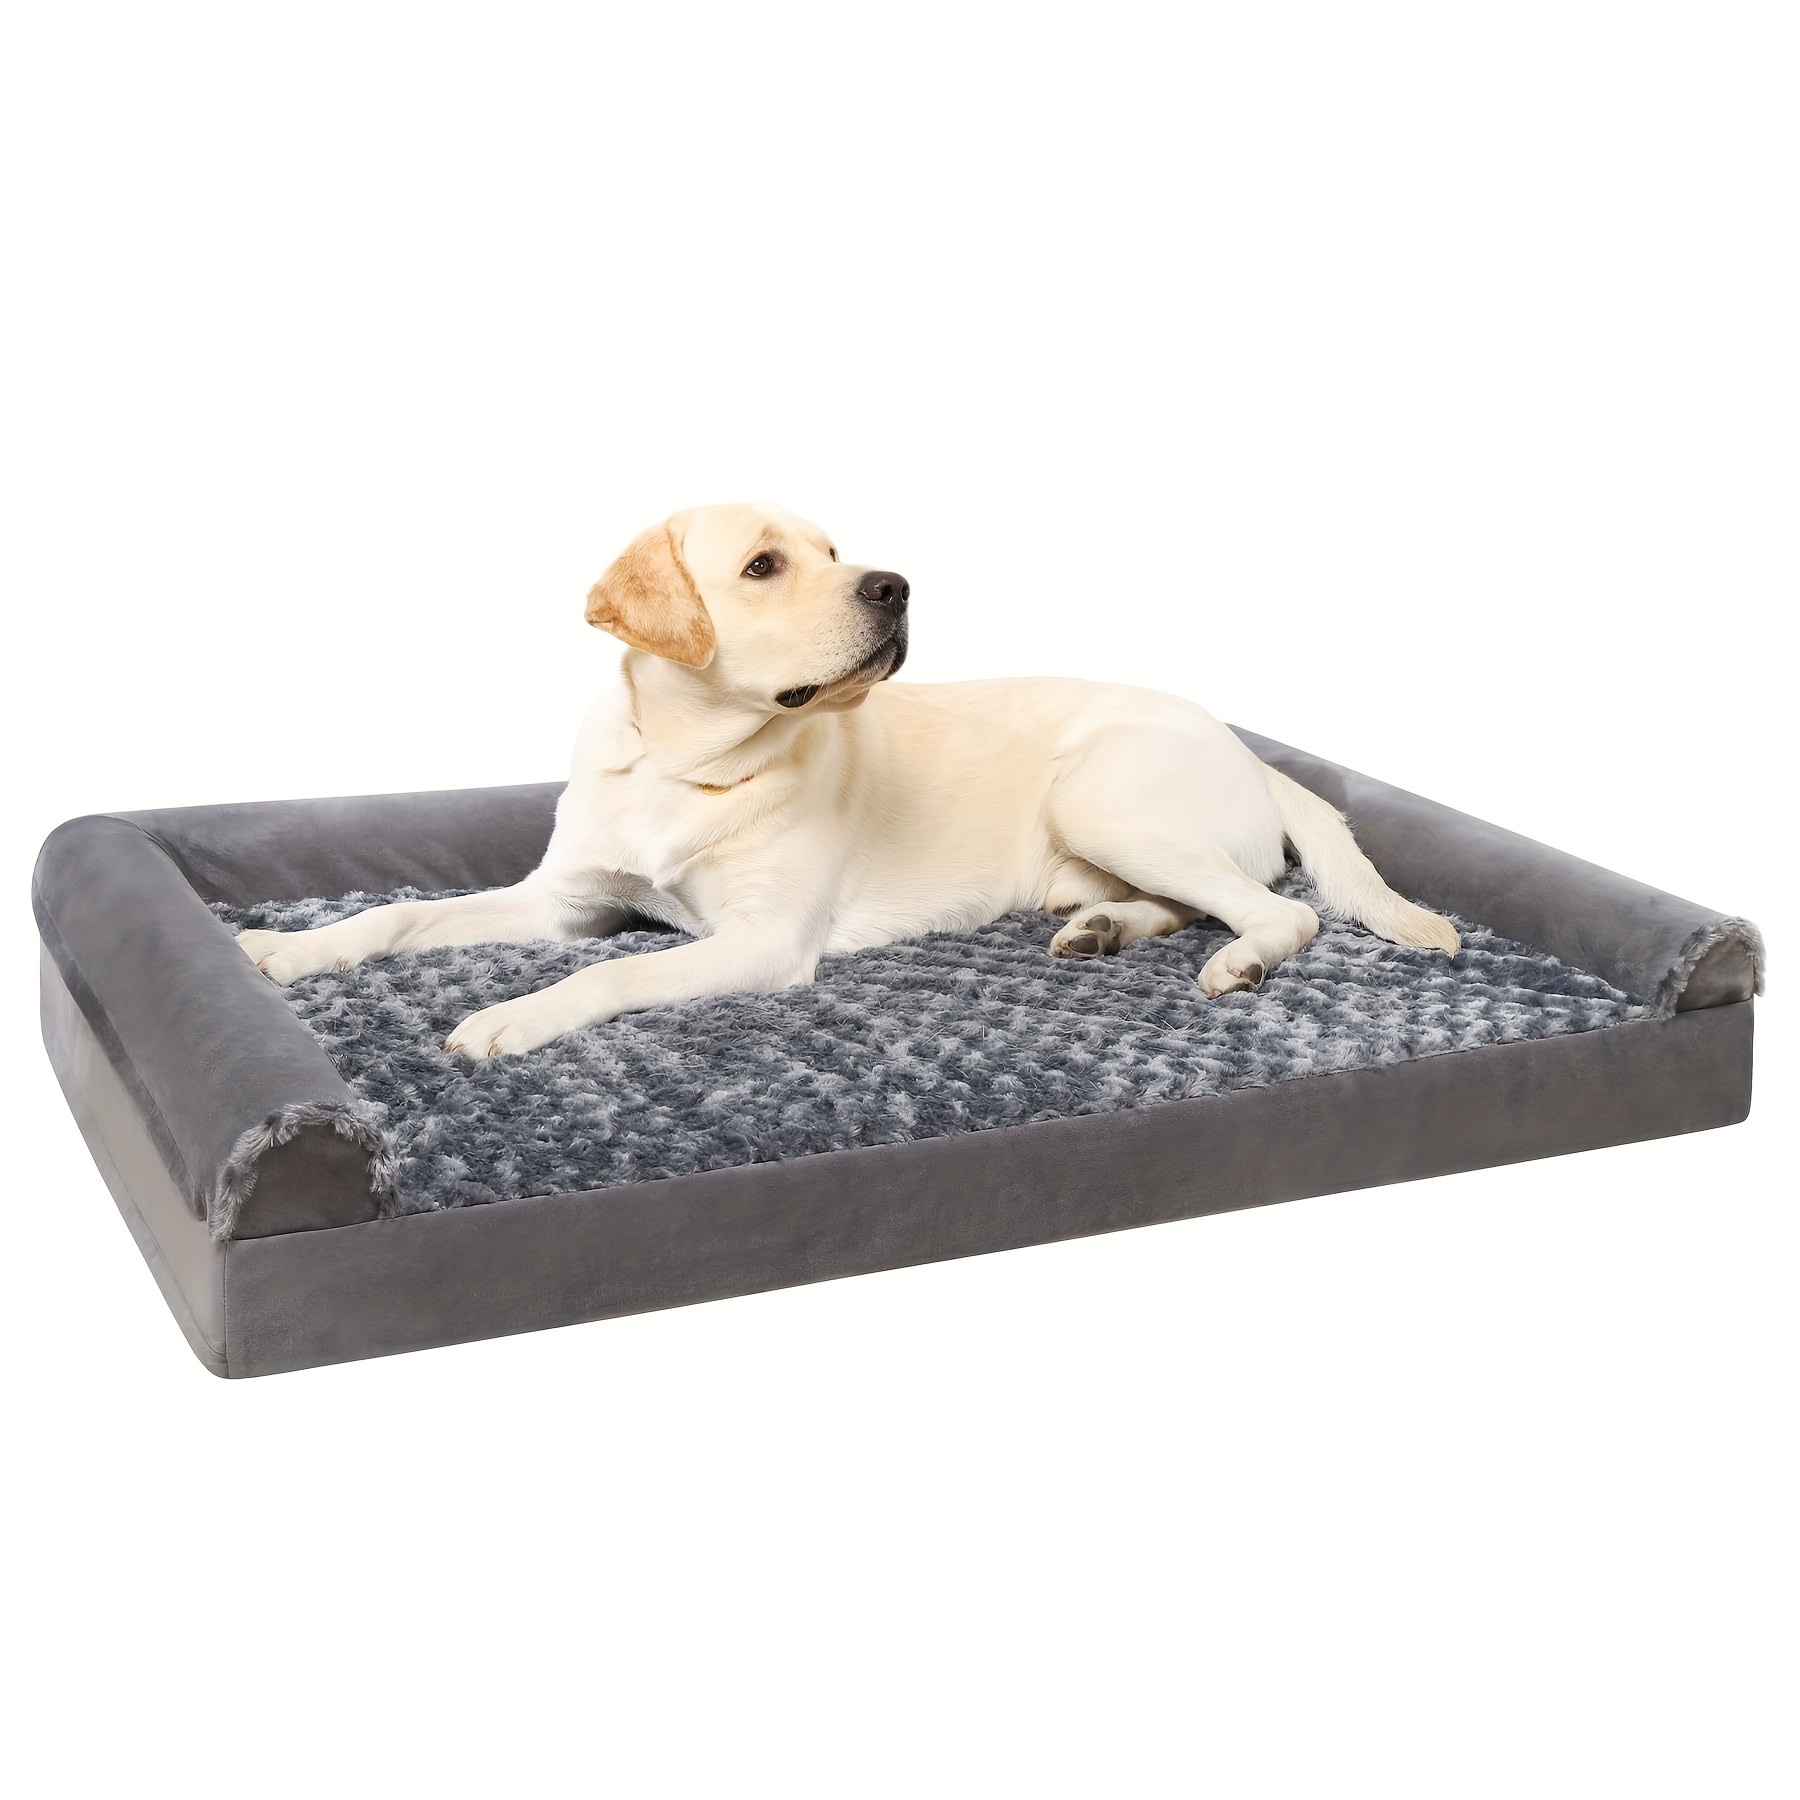 

Lits orthopédiques pour grands chiens, lit imperméable extra large pour chien avec housse amovible et lavable et fond antidérapant, tapis de lit pour animaux de compagnie